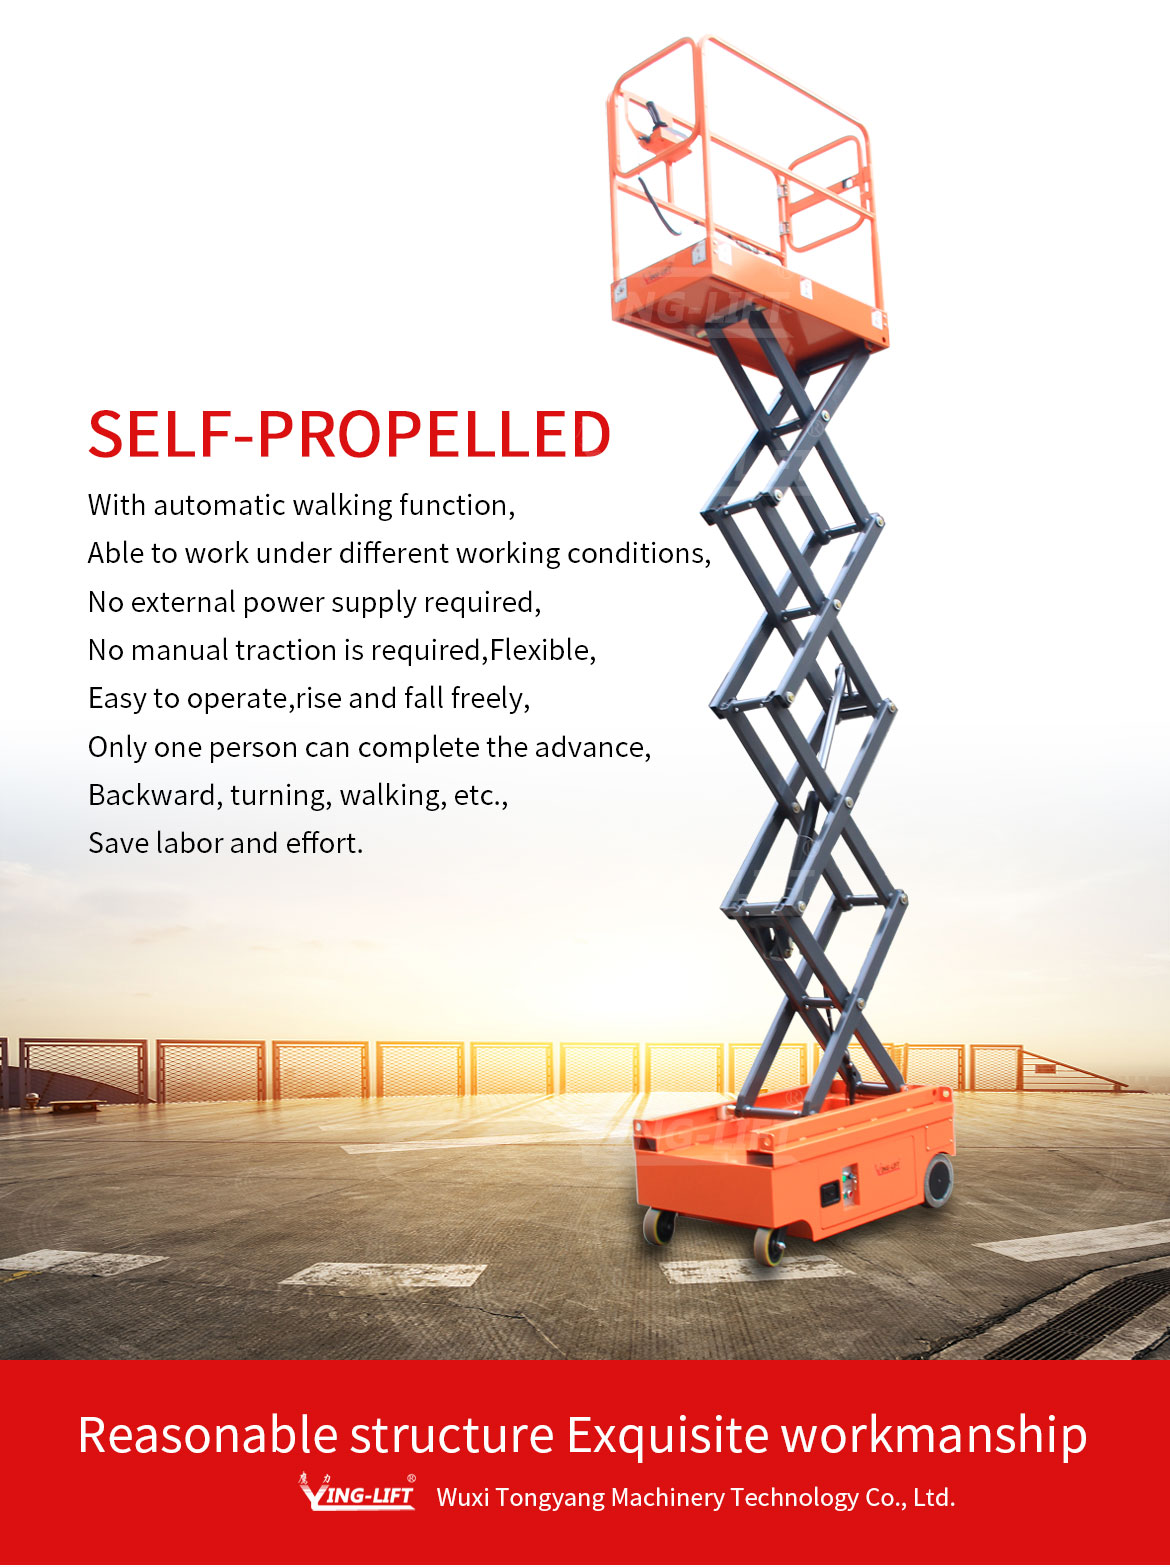 Full Electric Self-propelled Aerial Work Platform